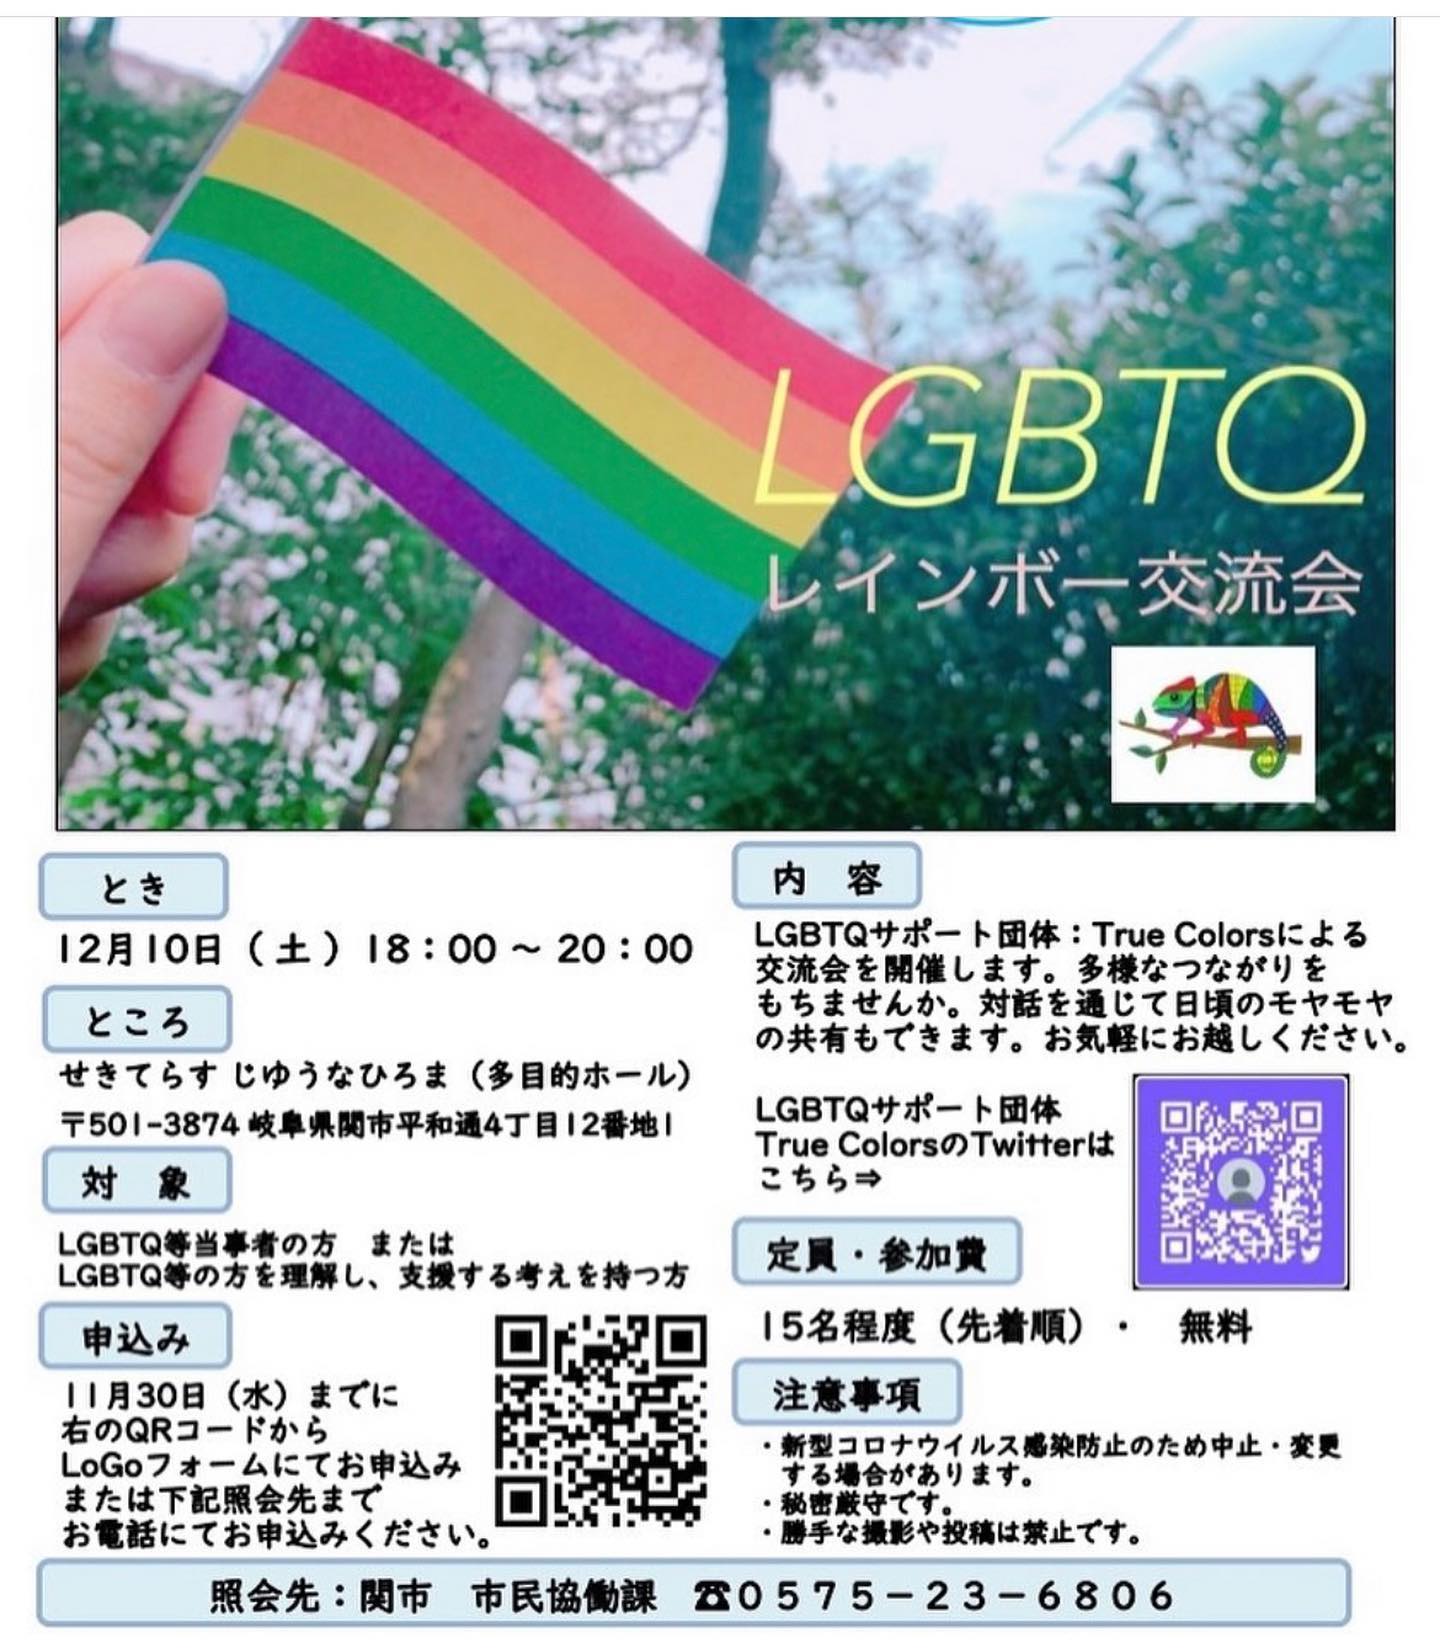 関市LGBT